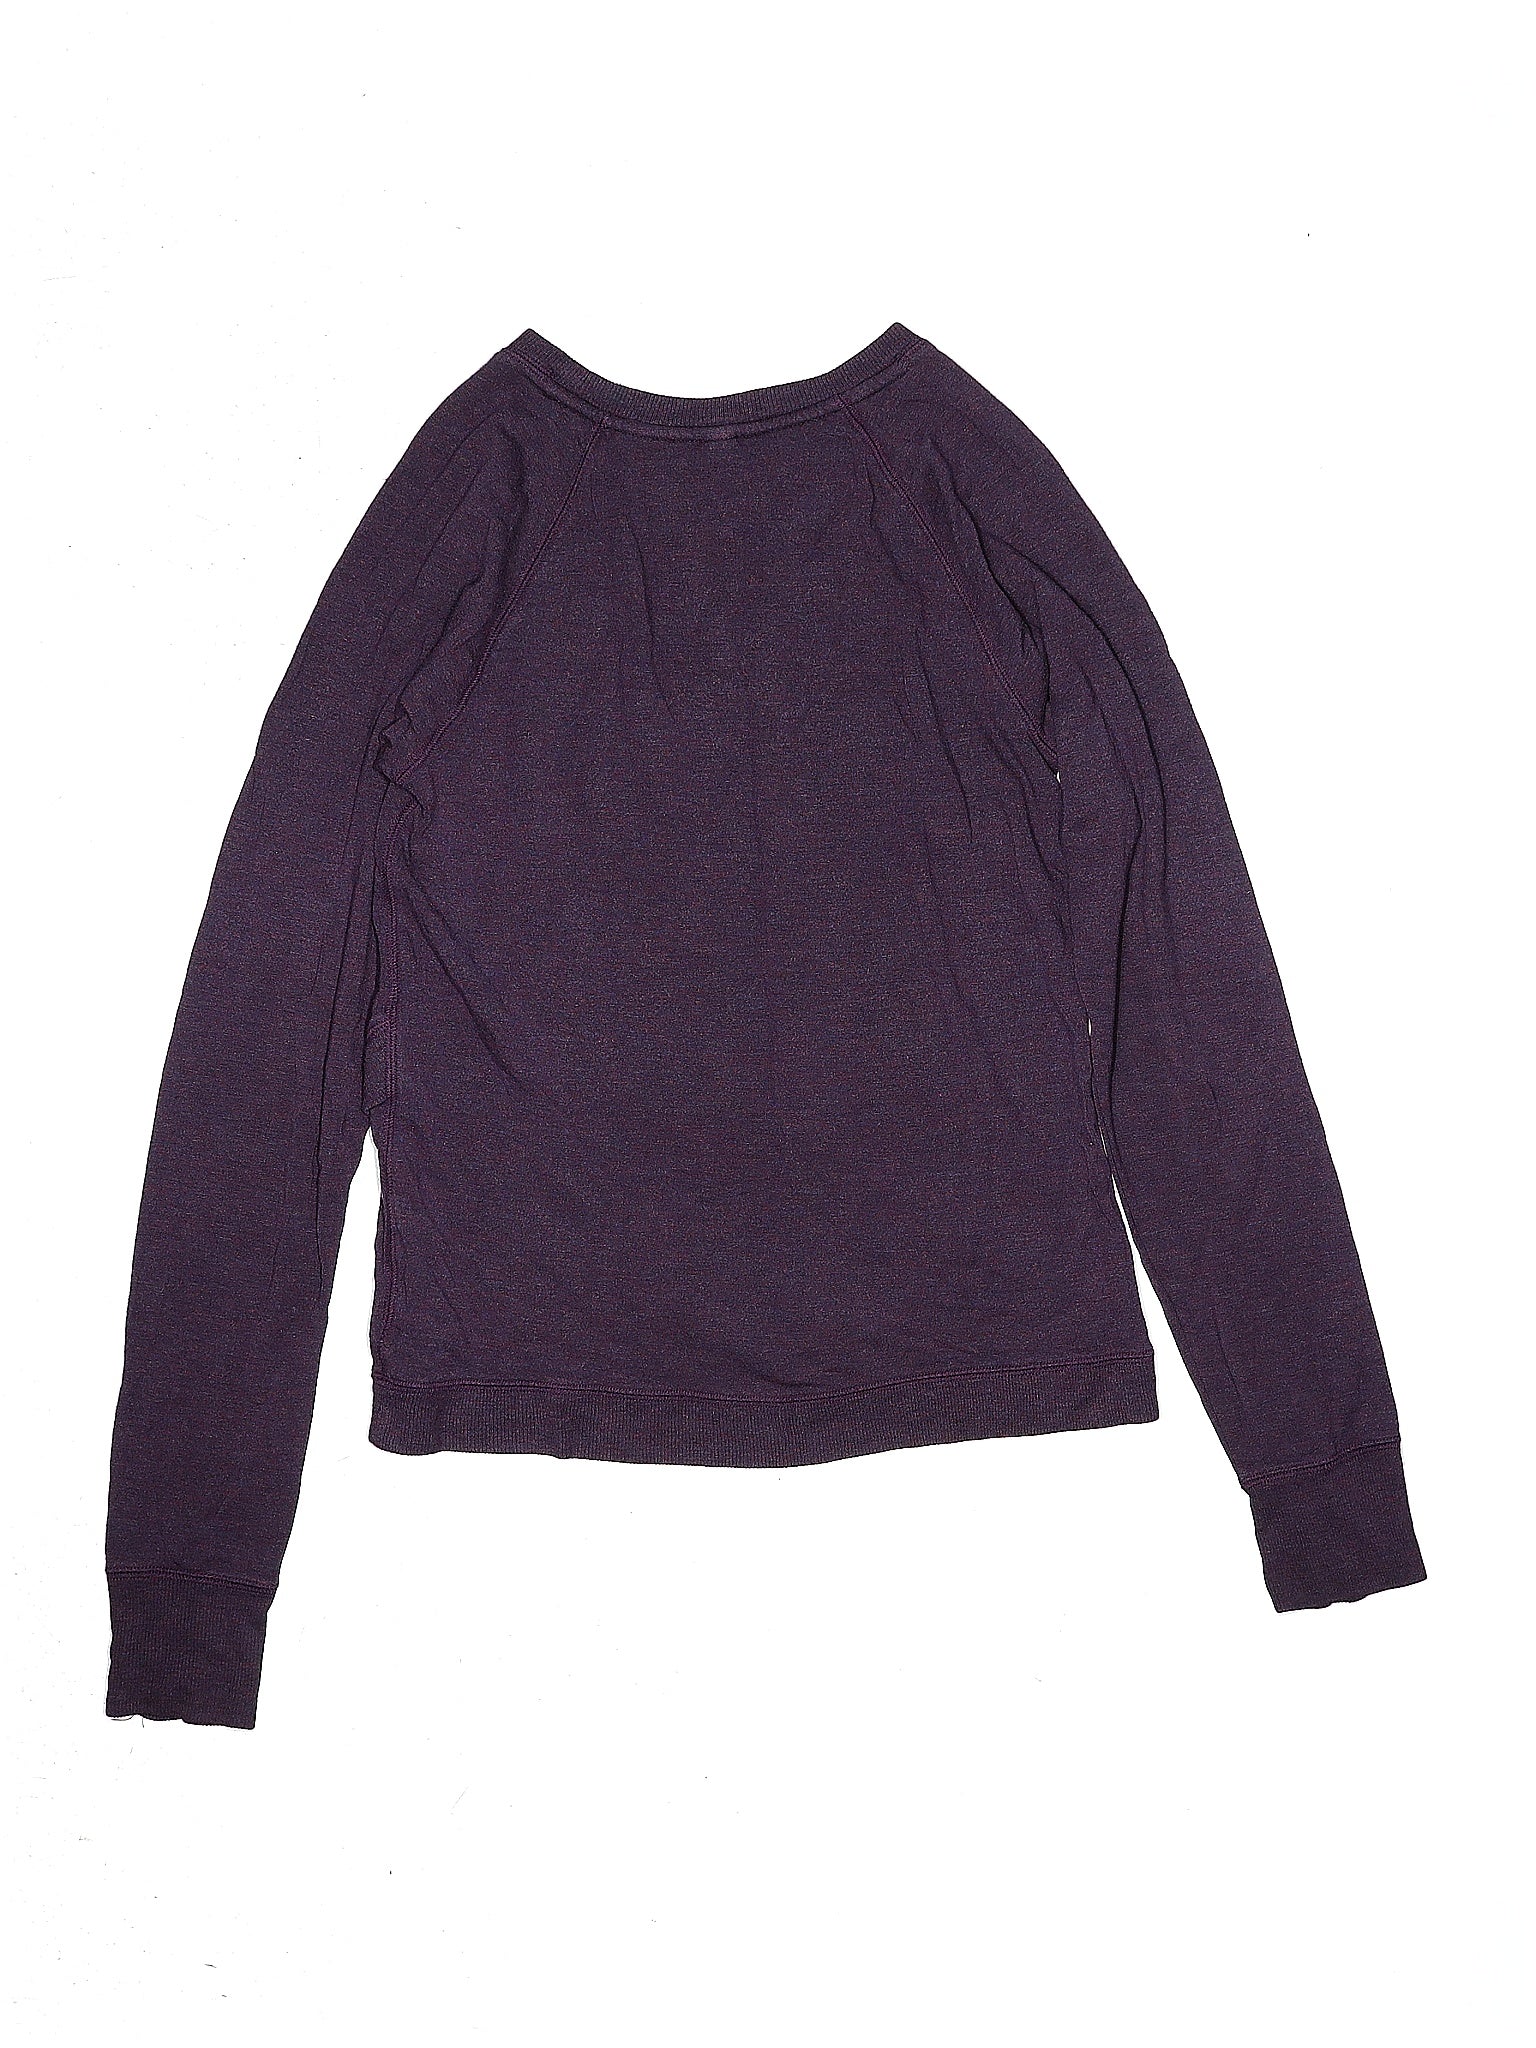 Sweatshirt size - X-Large (Youth)